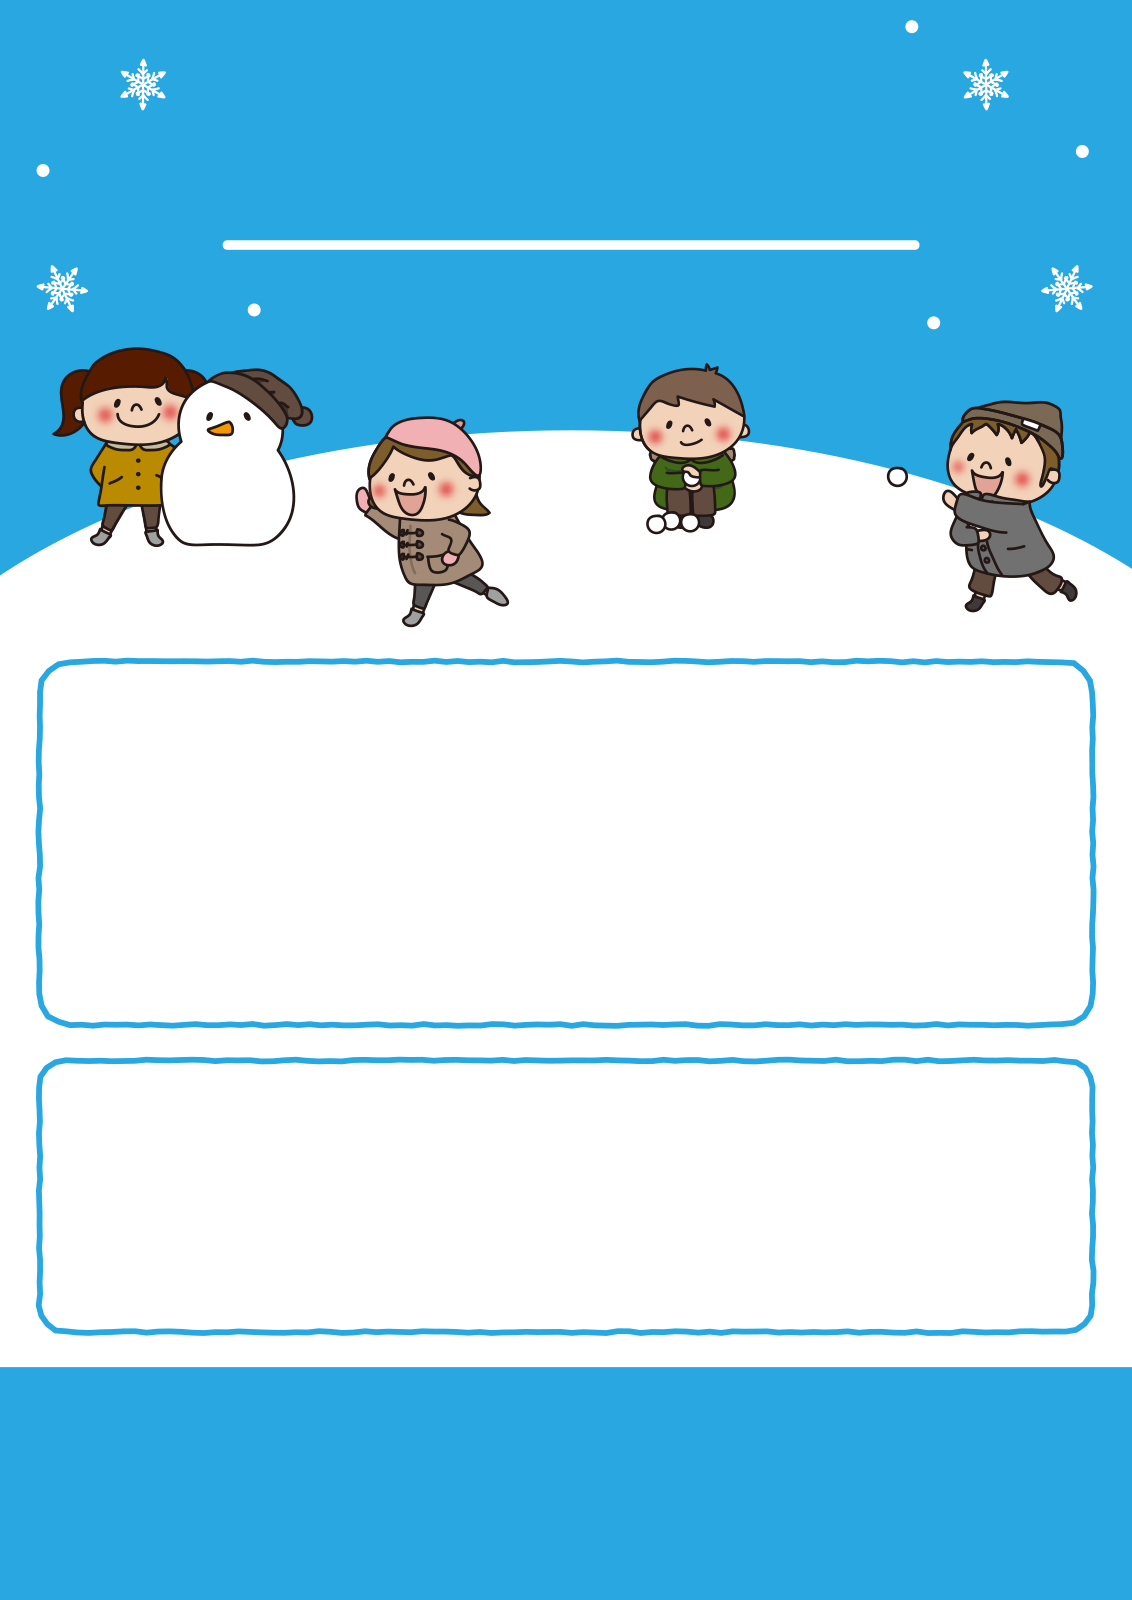 【チラシテンプレート】雪の中で遊ぶ子供たち3